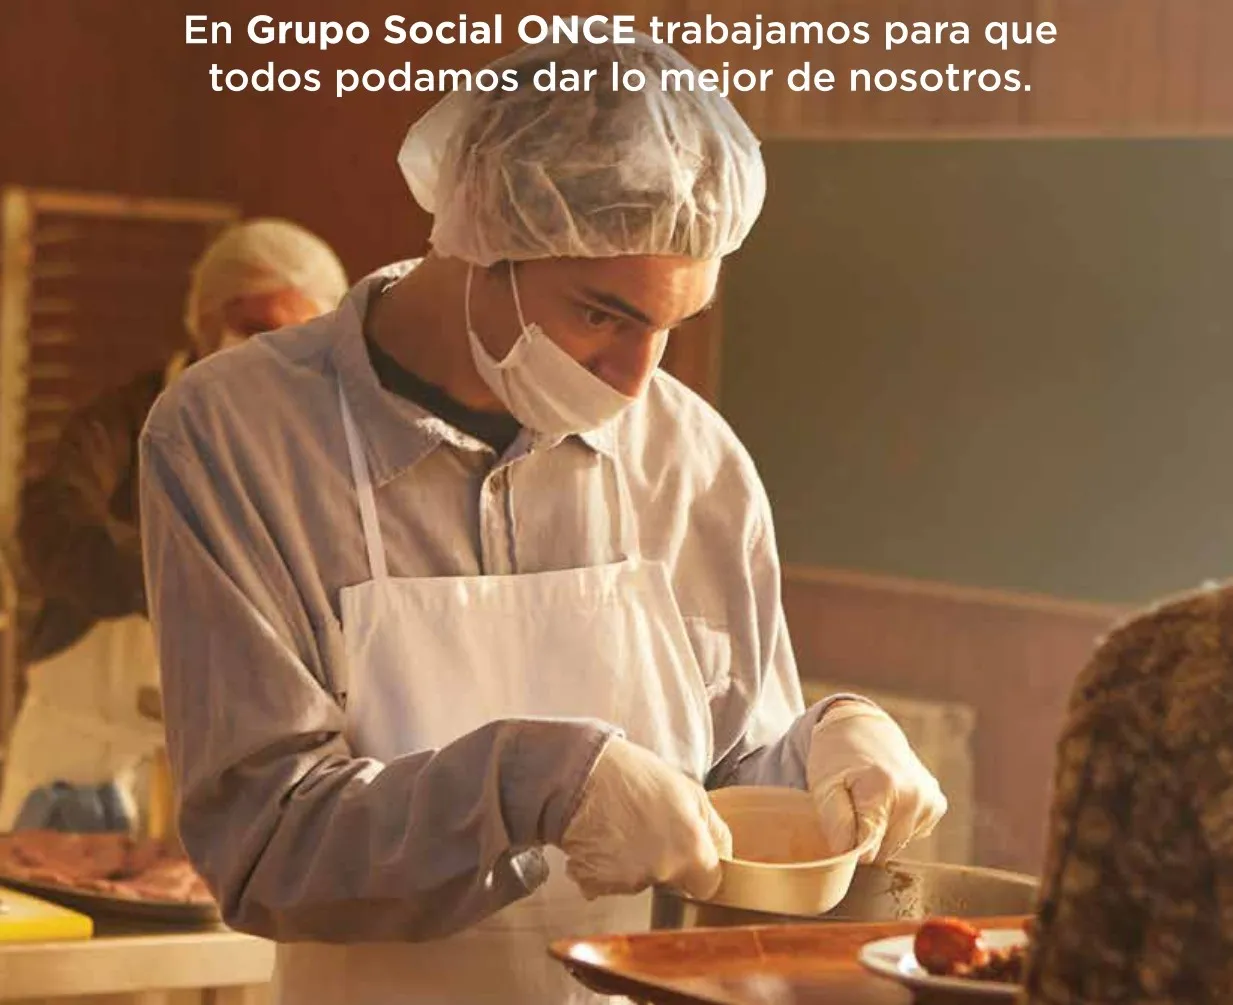 Imagen de uno de los carteles de la campaña donde se ve a un cocinero poner comida en la bandeja de otra persona, junto al texto "En Grupo Social ONCE trabajamos para que todos podamos dar lo mejor de si mismos"